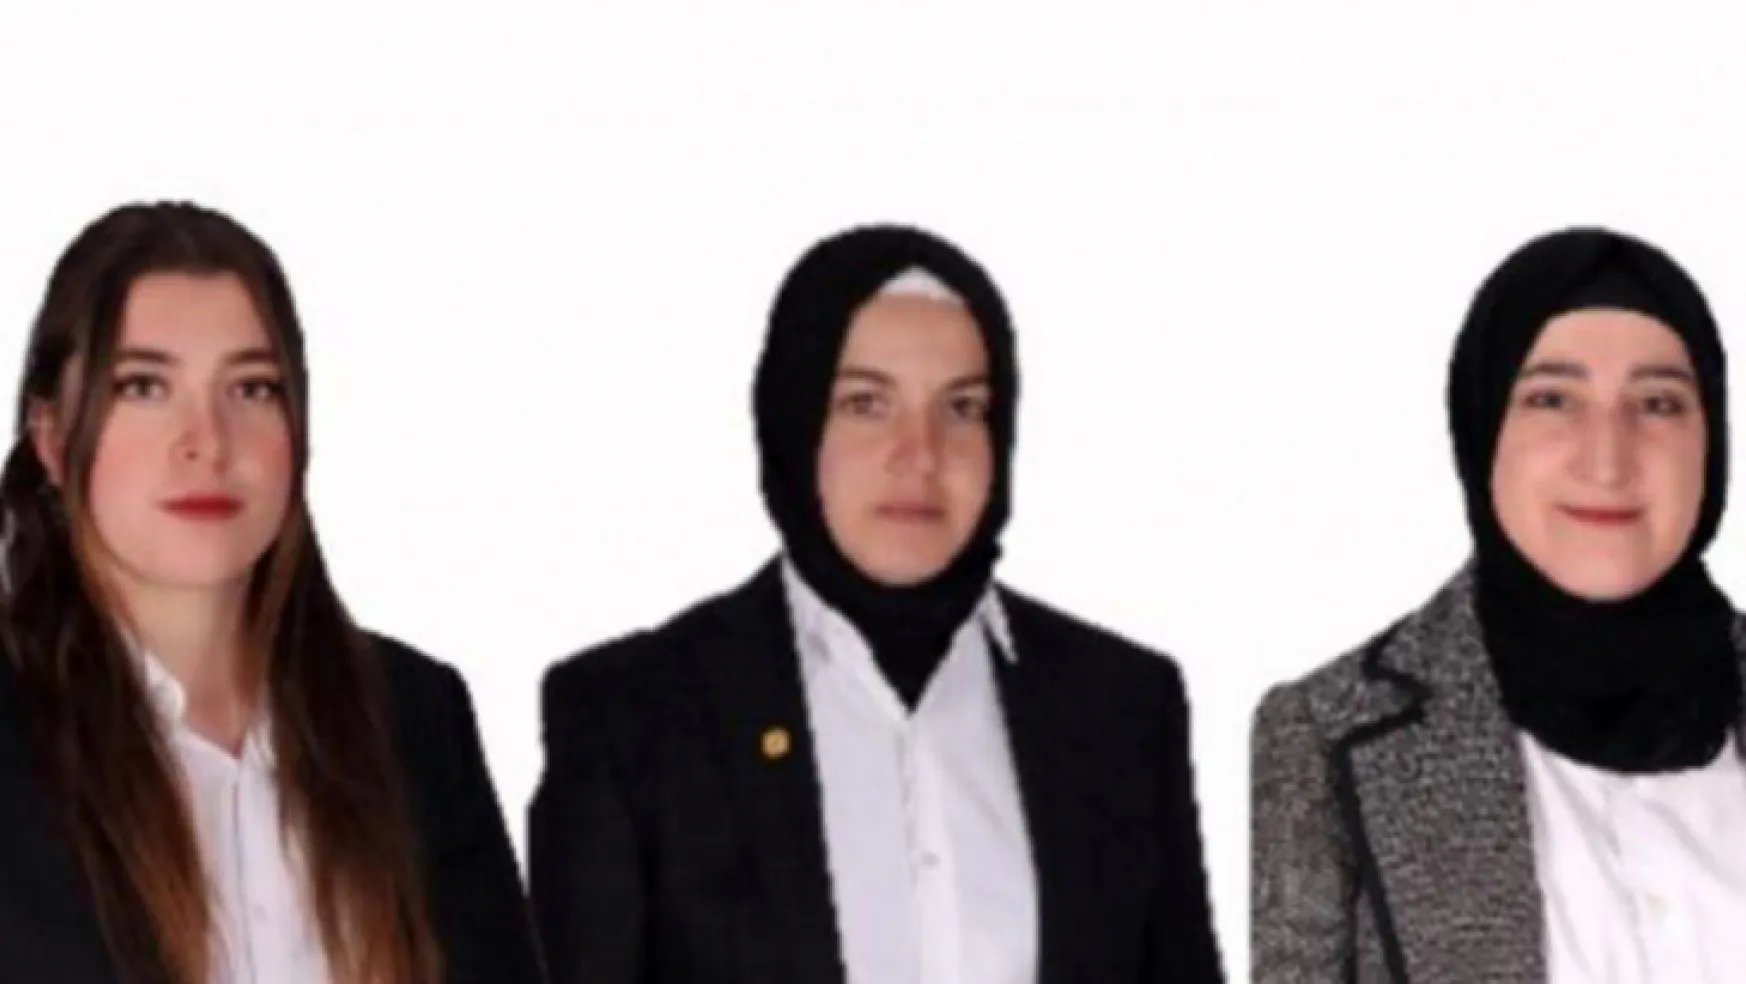 89 yıldır kadın milletvekili çıkmayan Burdur'da 9 kadın aday